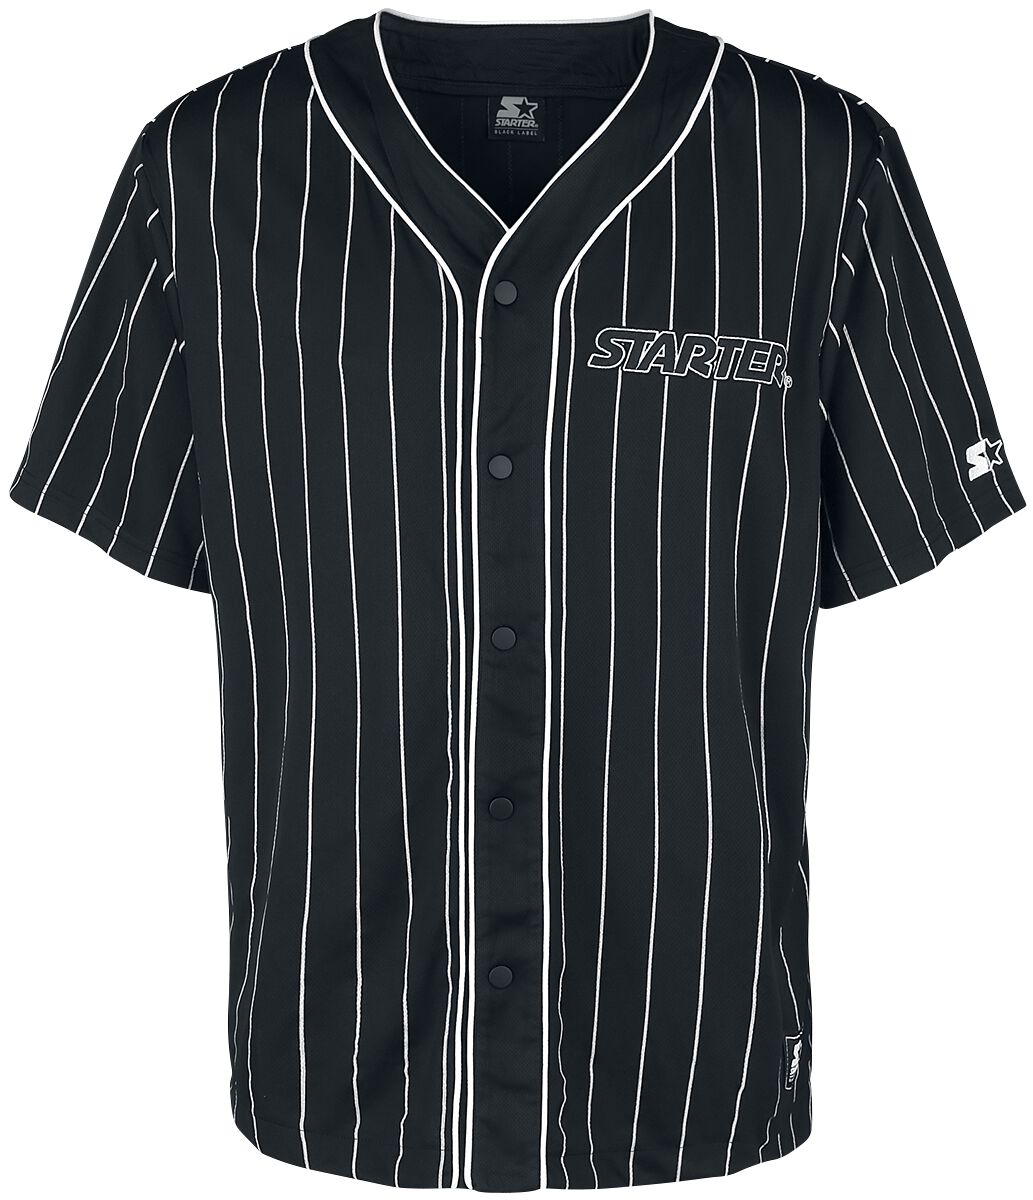 Image of Camicia Maniche Corte di Starter - Baseball Jersey - S a XL - Uomo - nero